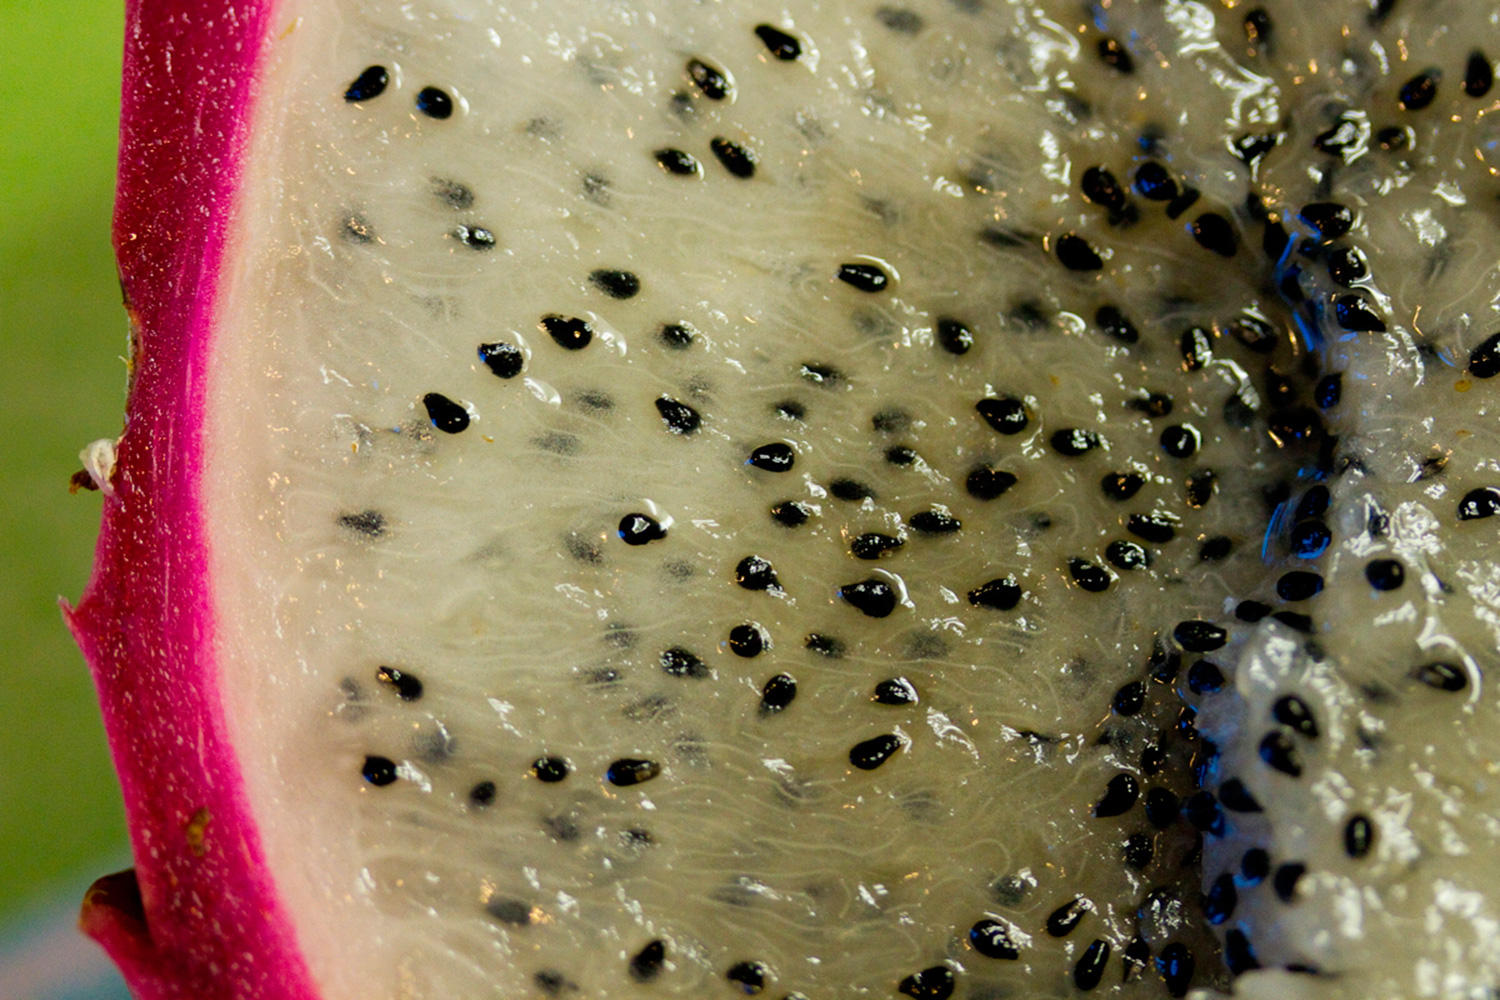 Detalle de las semillas negras de la pitaya (Foto: Alex Pierre / Flickr bajo Licencia Creative Commons)